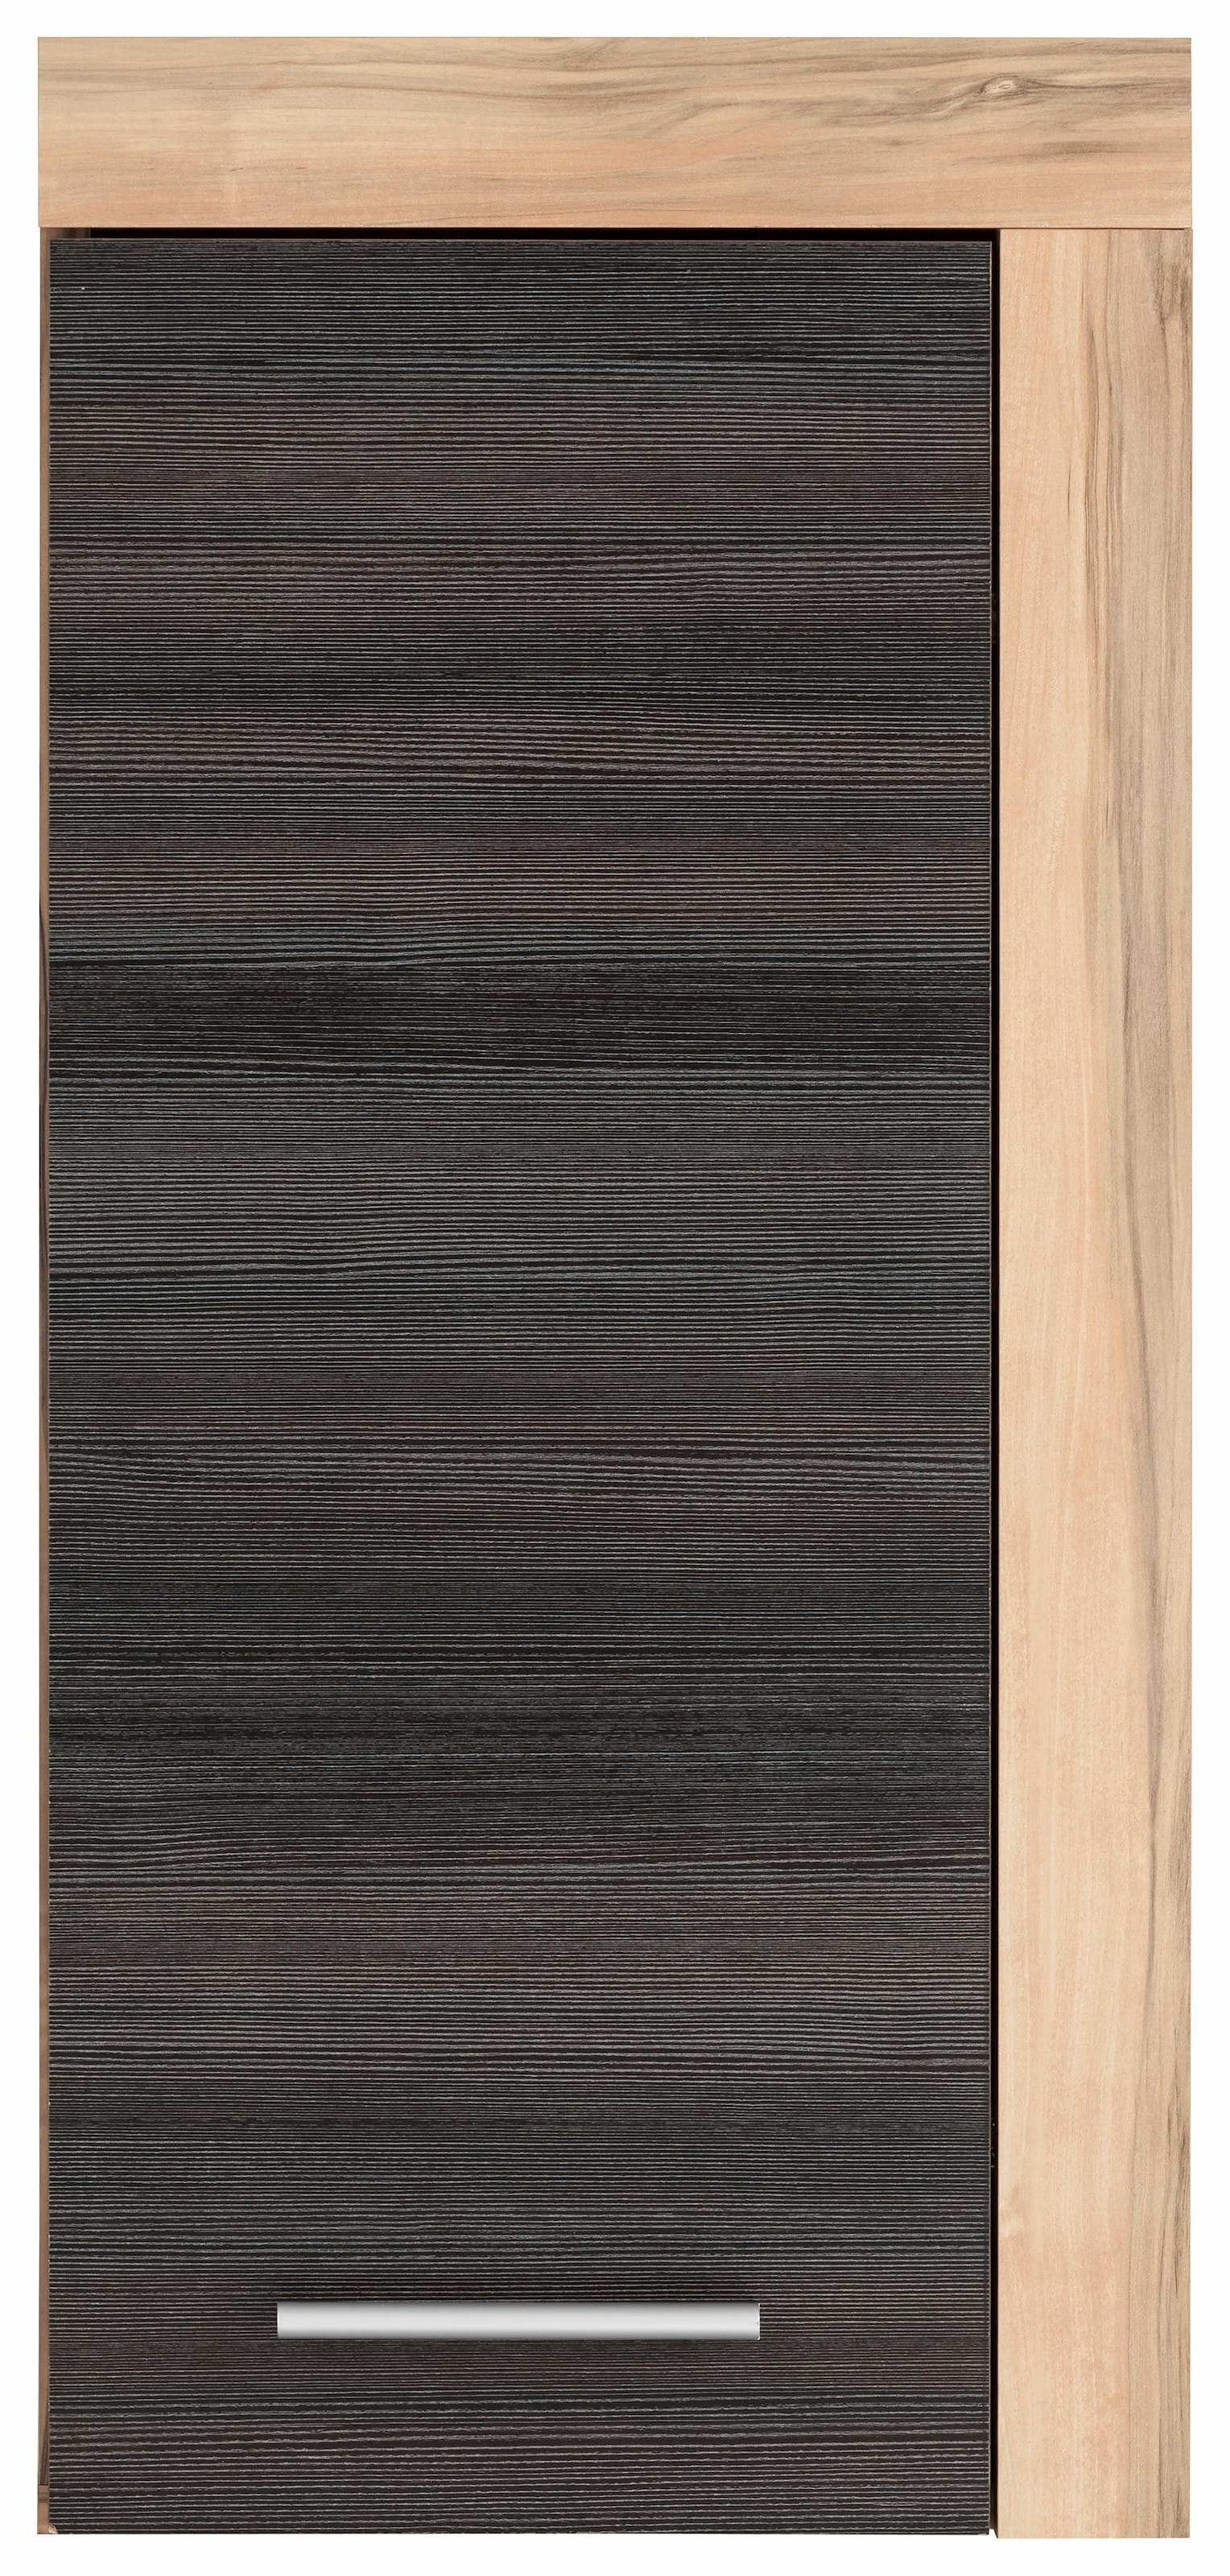 welltime Hängeschrank »Carcassonne«, mit Rahmenoptik in Holztönen, Breite 36 cm